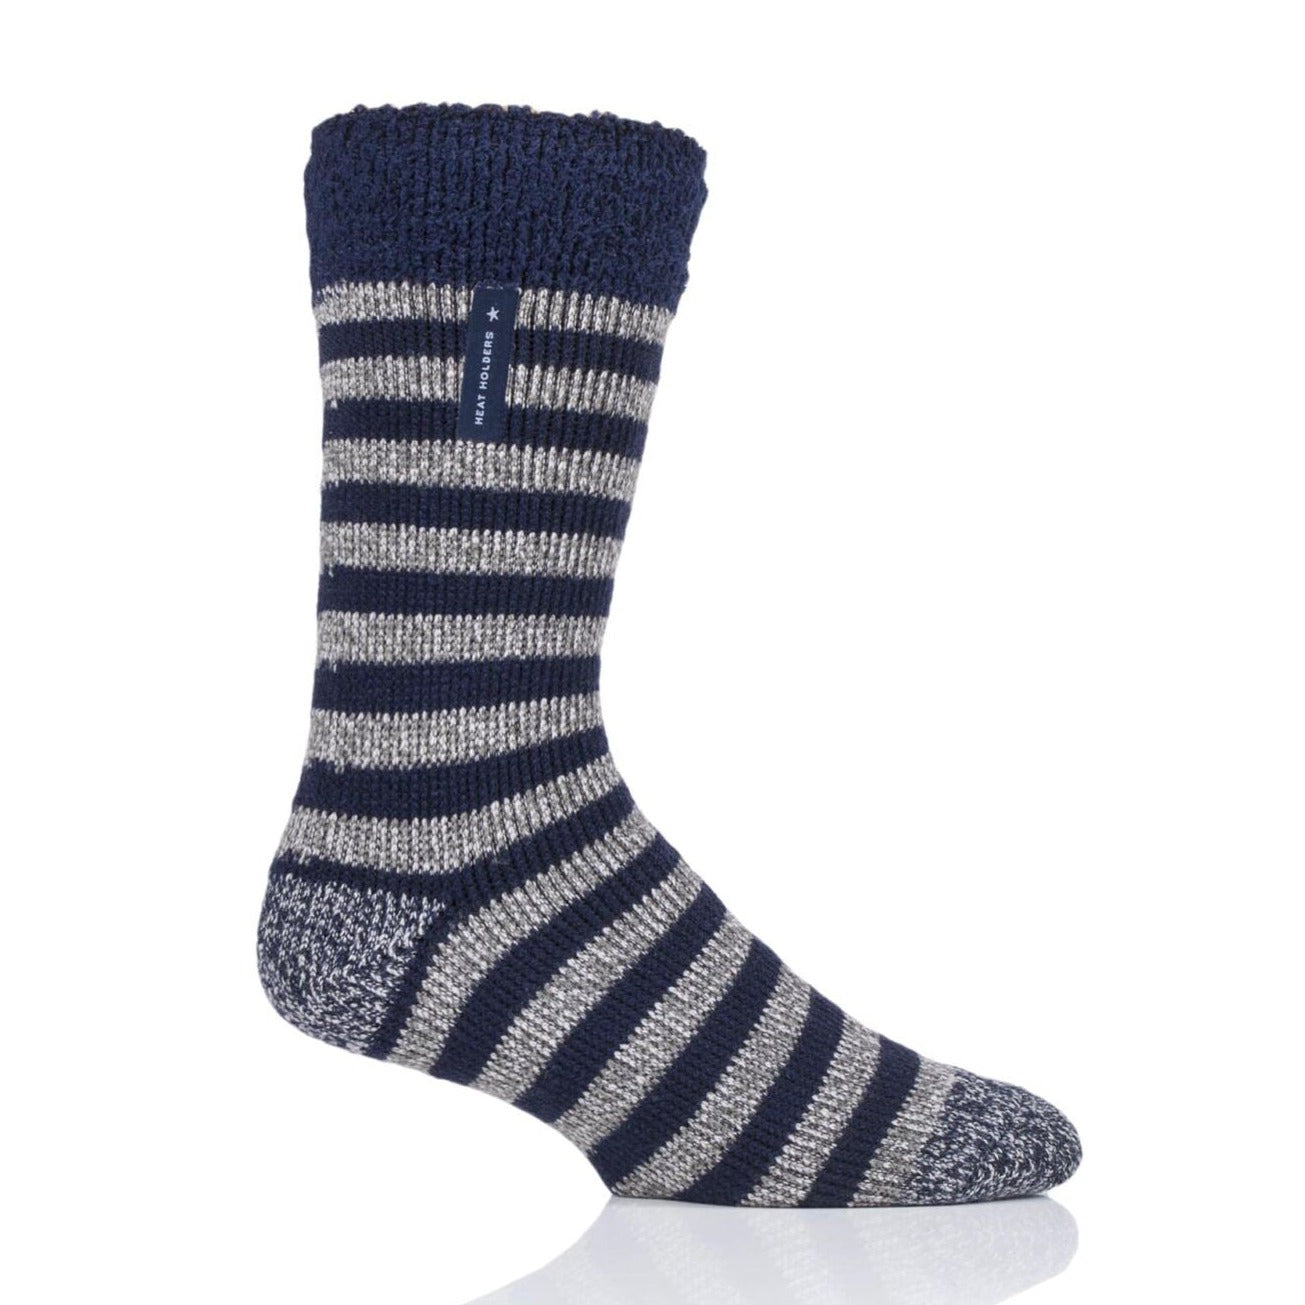 HEAT HOLDERS Lumi Thermal Sleep Socks-Mens 6-11